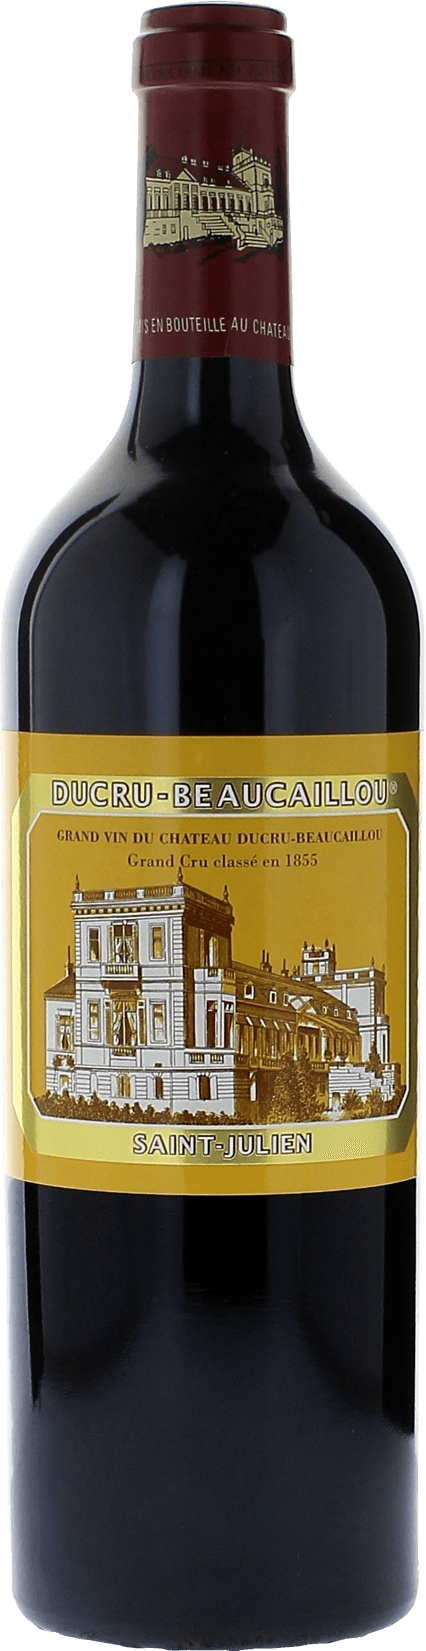 Ducru beaucaillou 1976 2me Grand cru class Saint-Julien, Bordeaux rouge